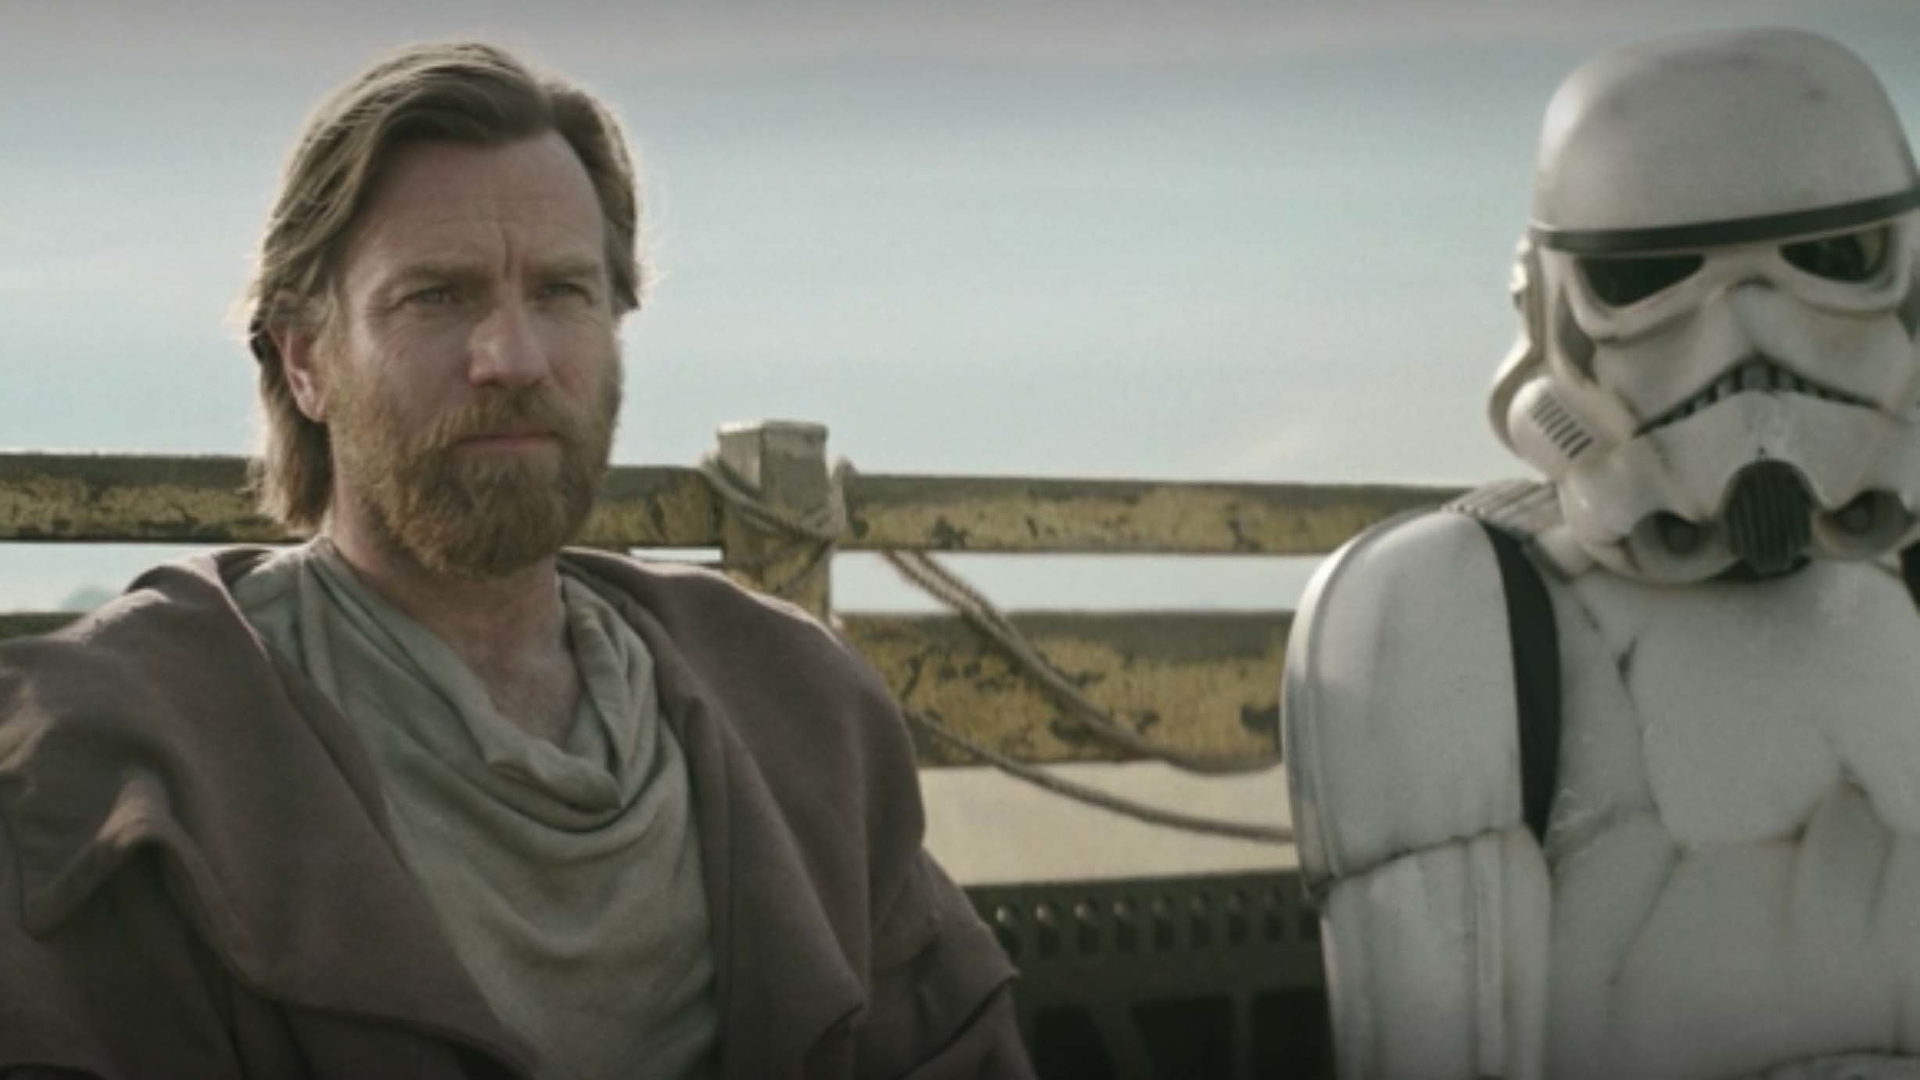 Obi-Wan Kenobi star Moses Ingram talks joining Star Wars as new villain  Reva